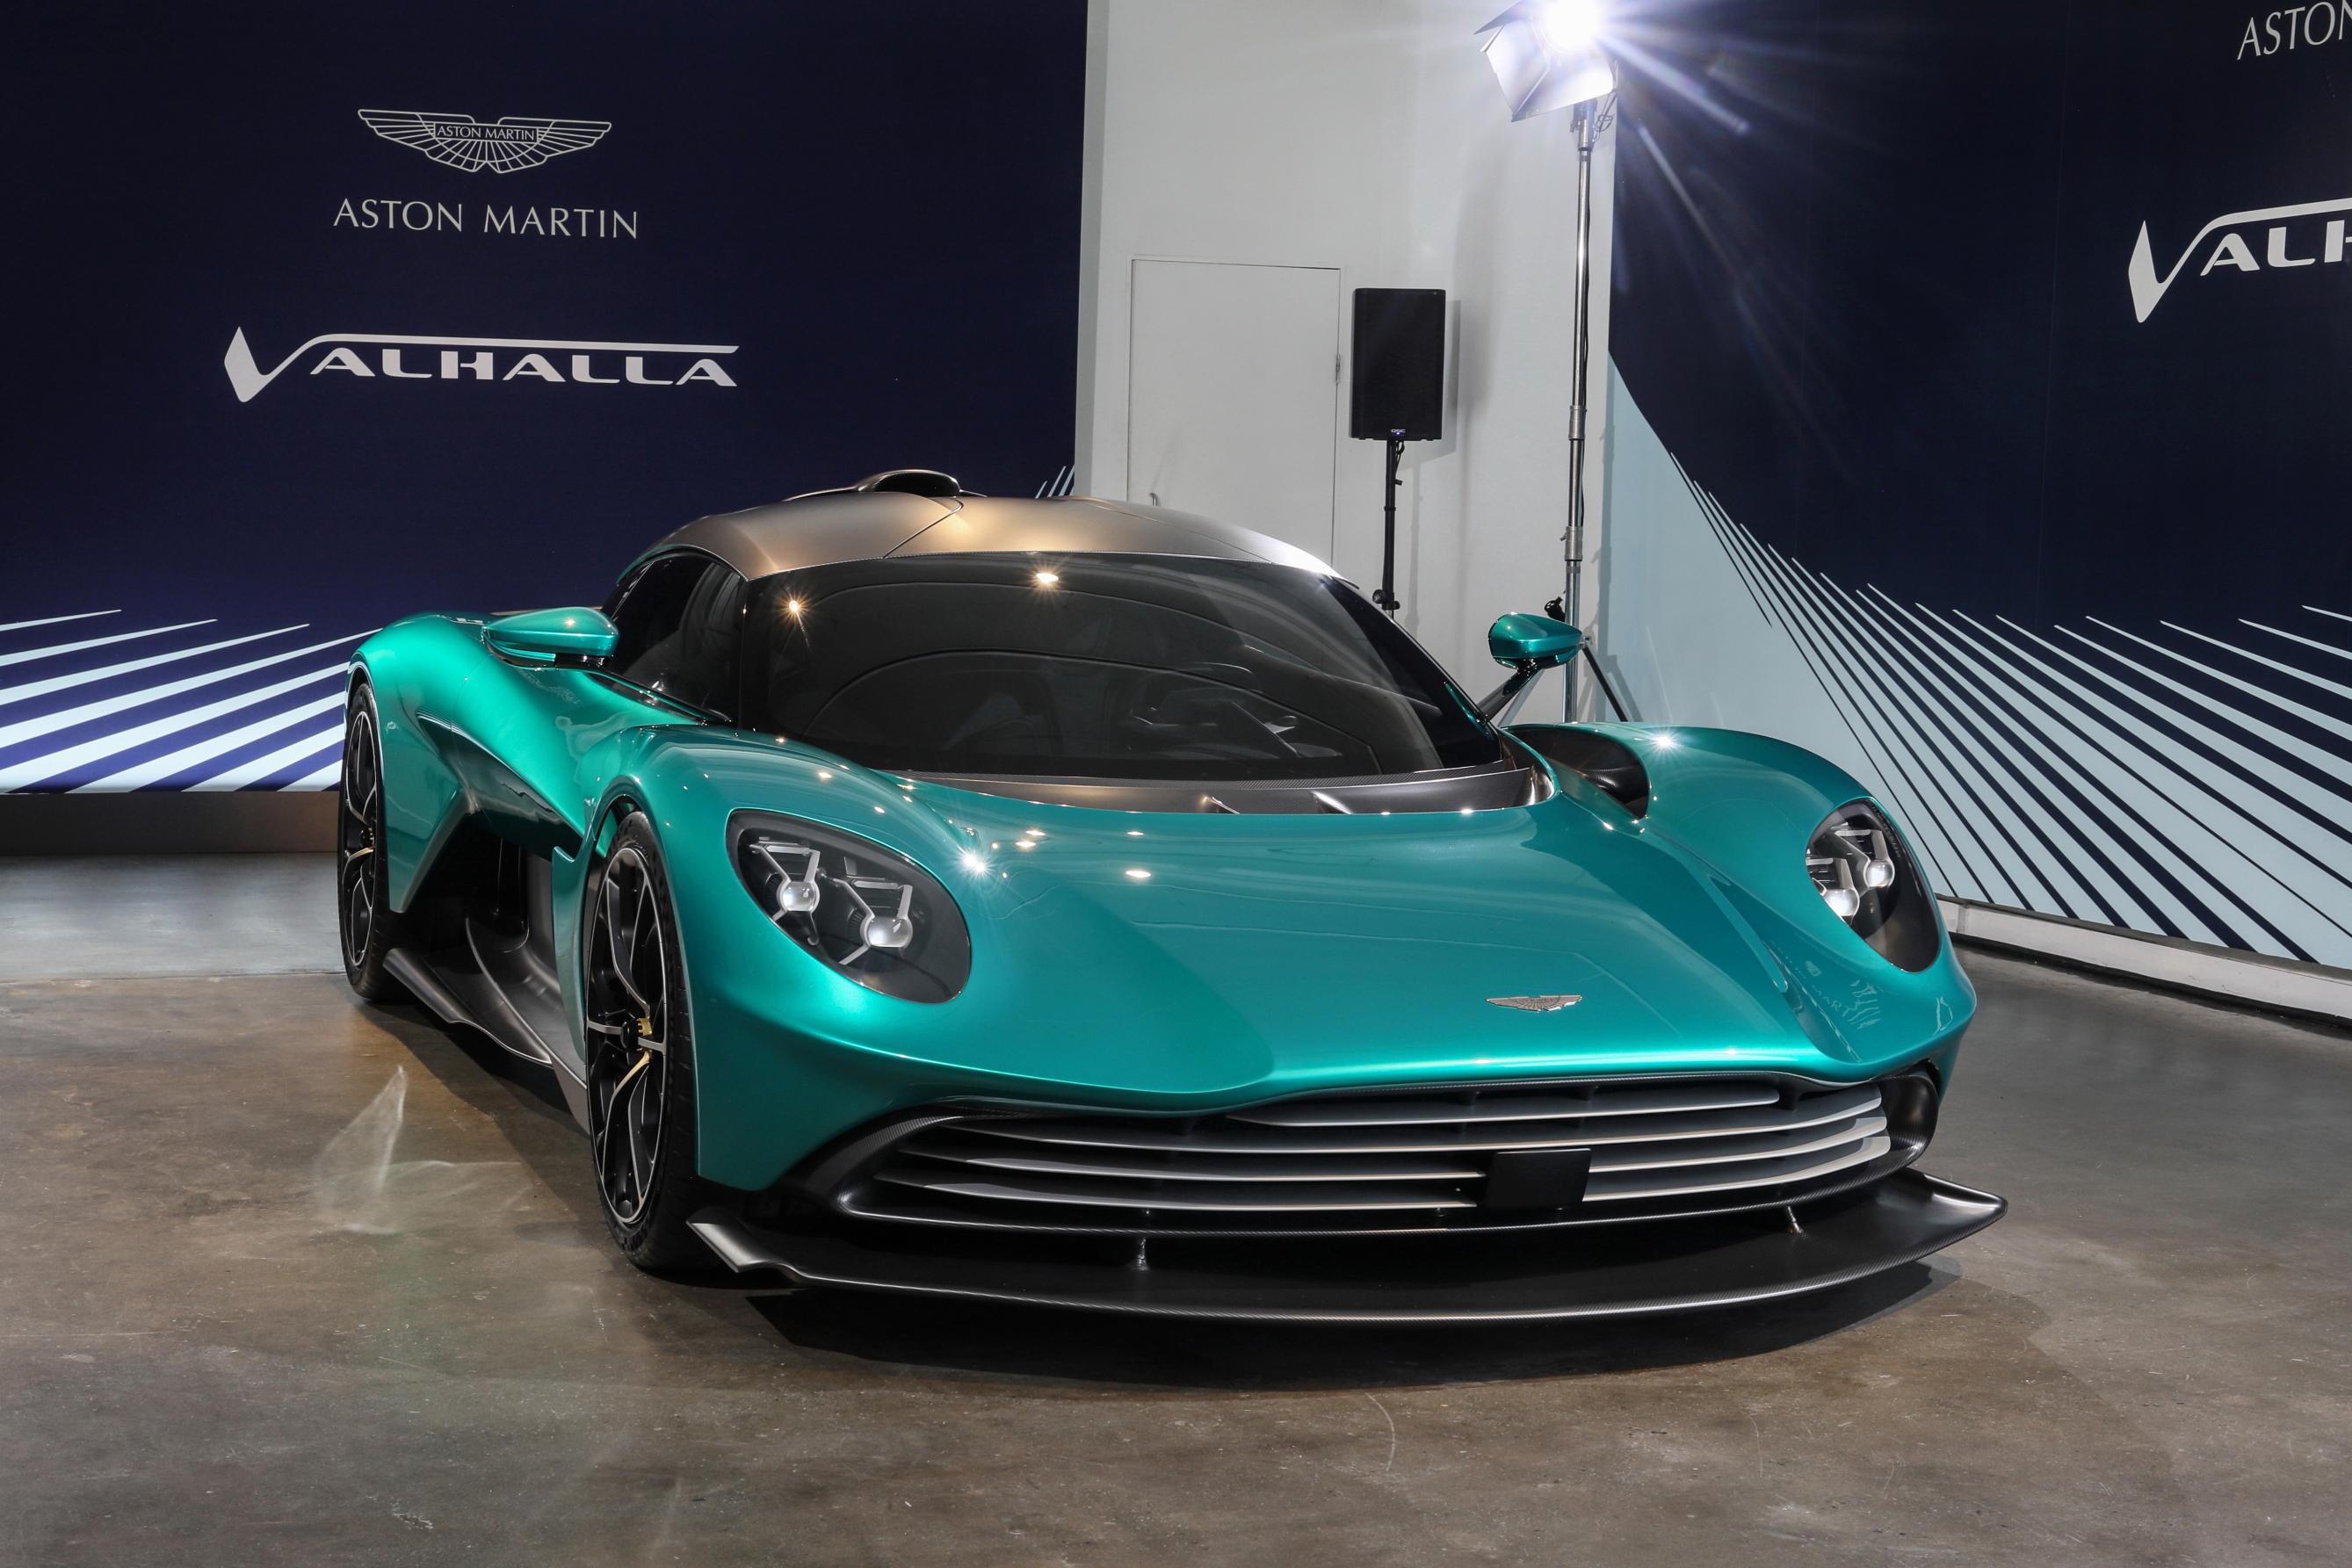 2023 Aston Martin Valhalla Price